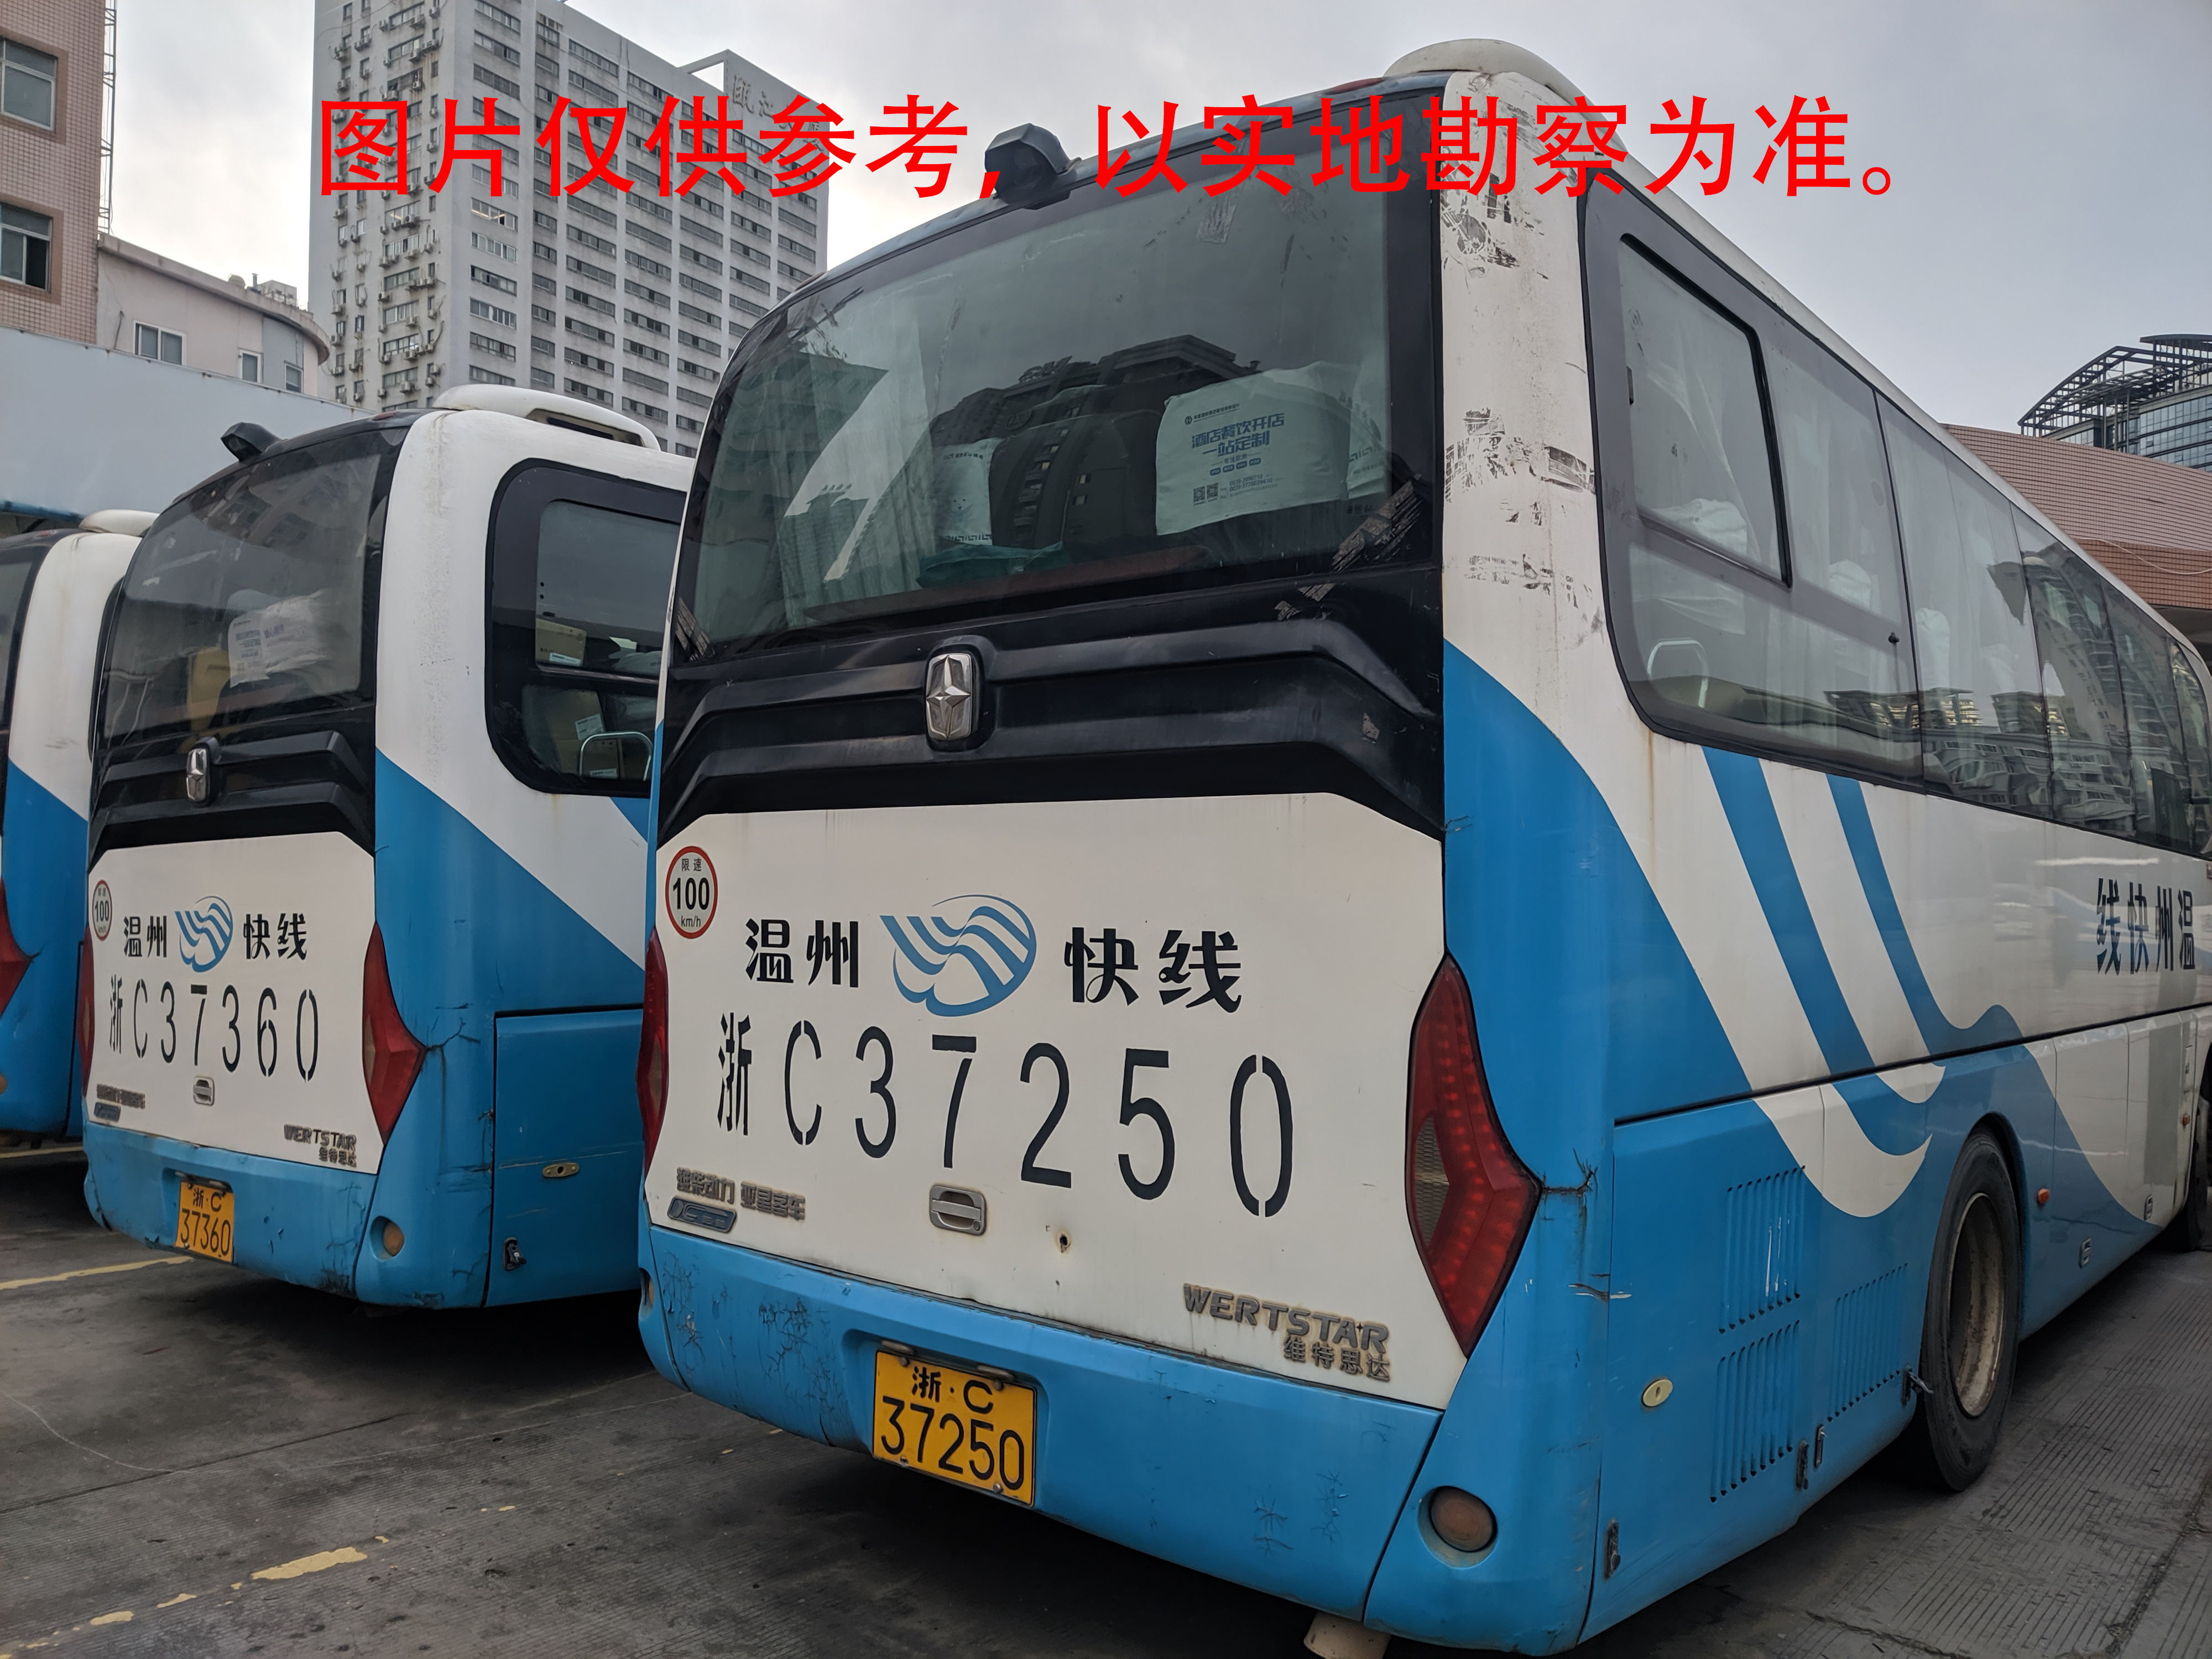 浙C37250亚星牌大型普通客车转让出售招标